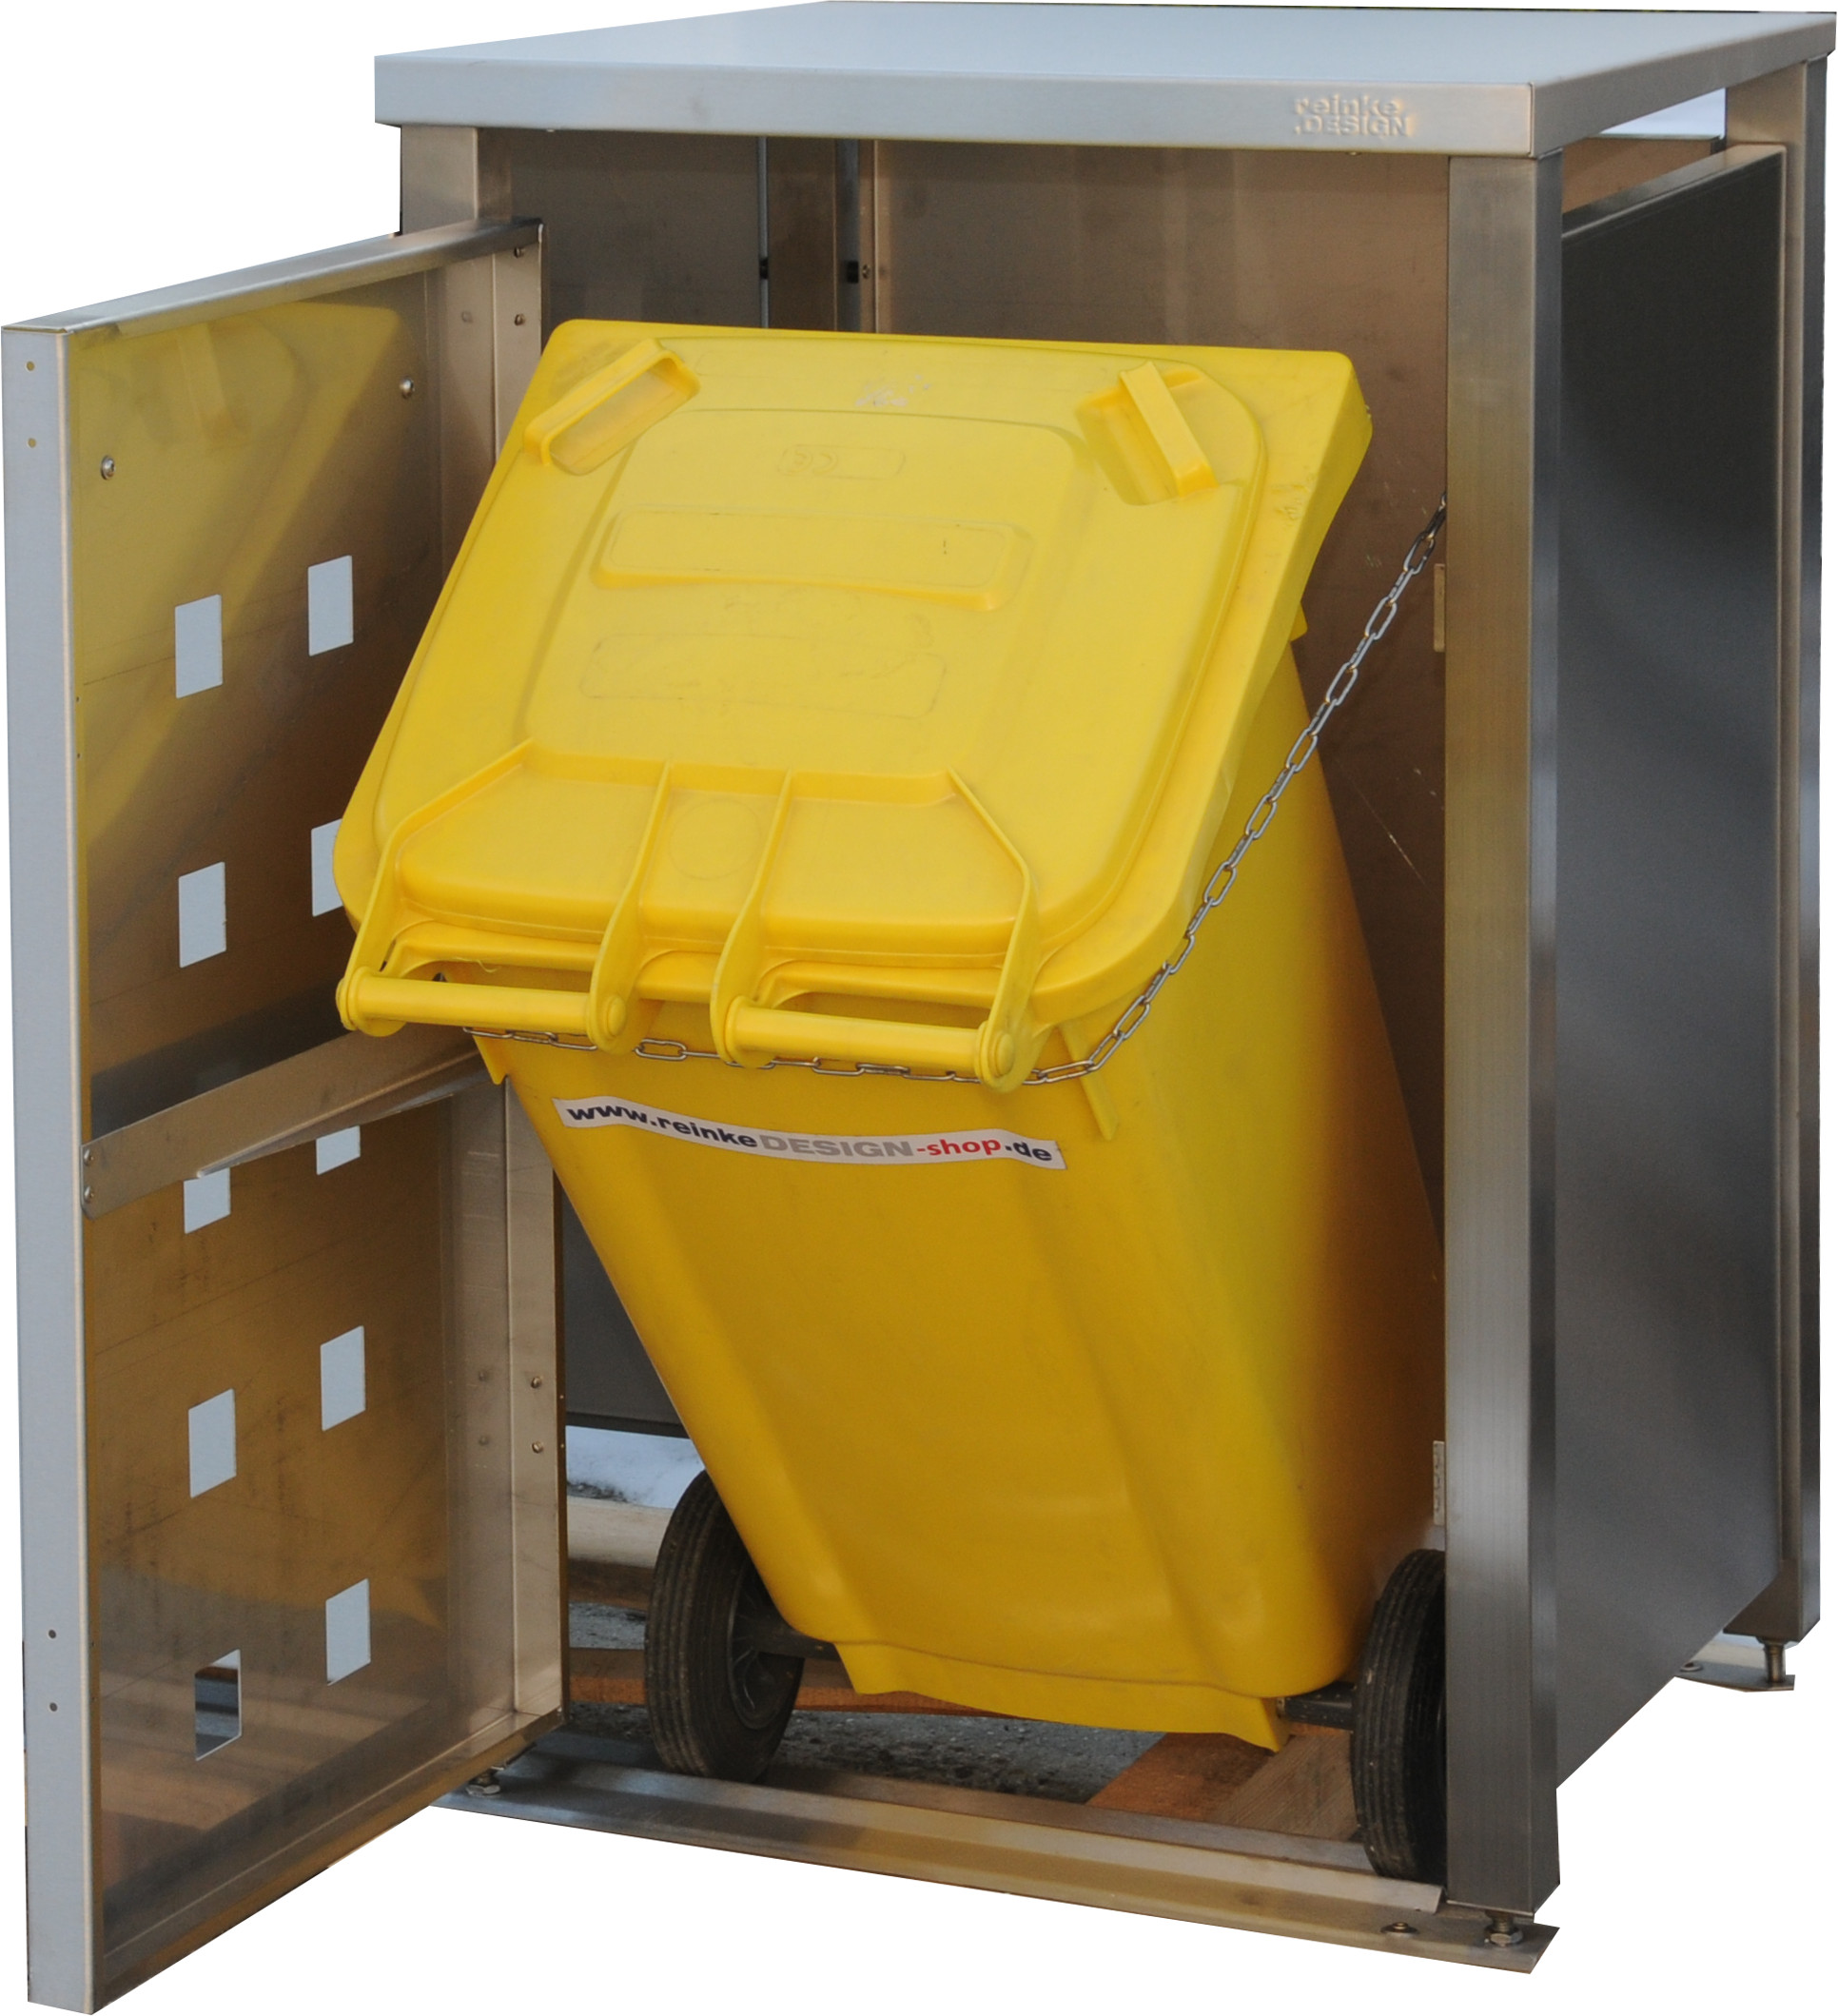 Müllbox Typ-LD, 2x 240l + 1x 120l, Türfarbe Edelstahl